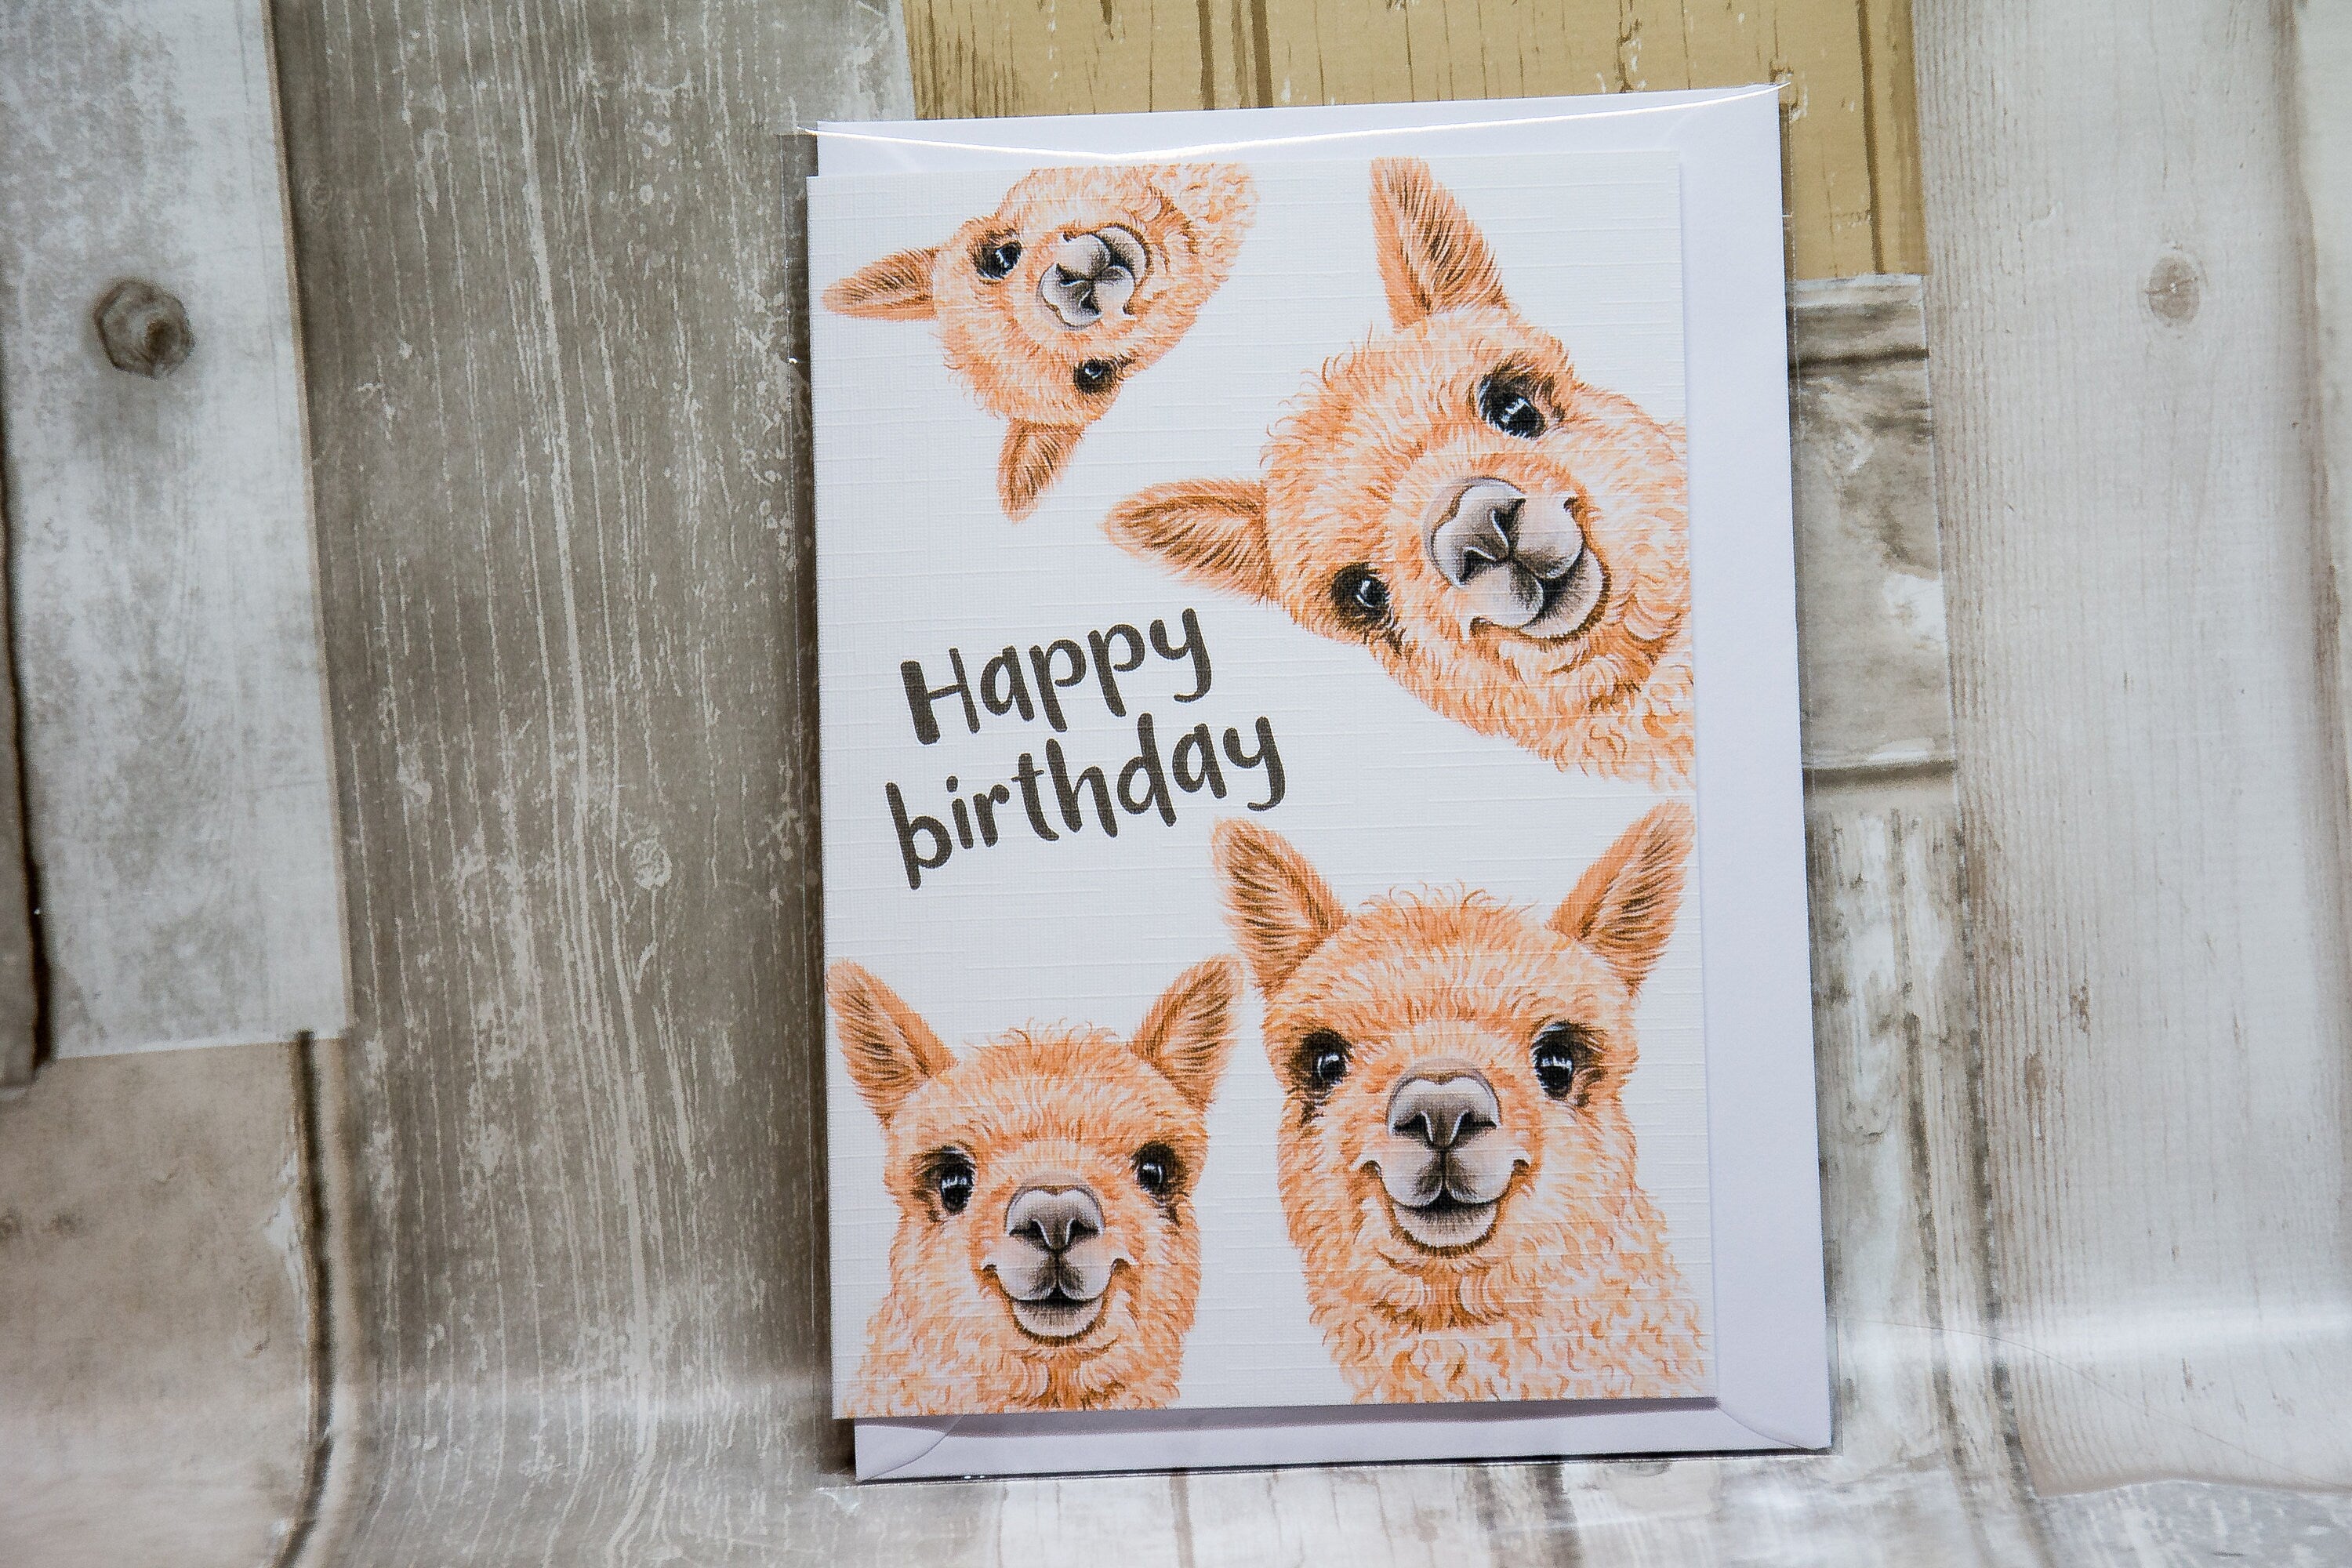 Alpaca birthday card